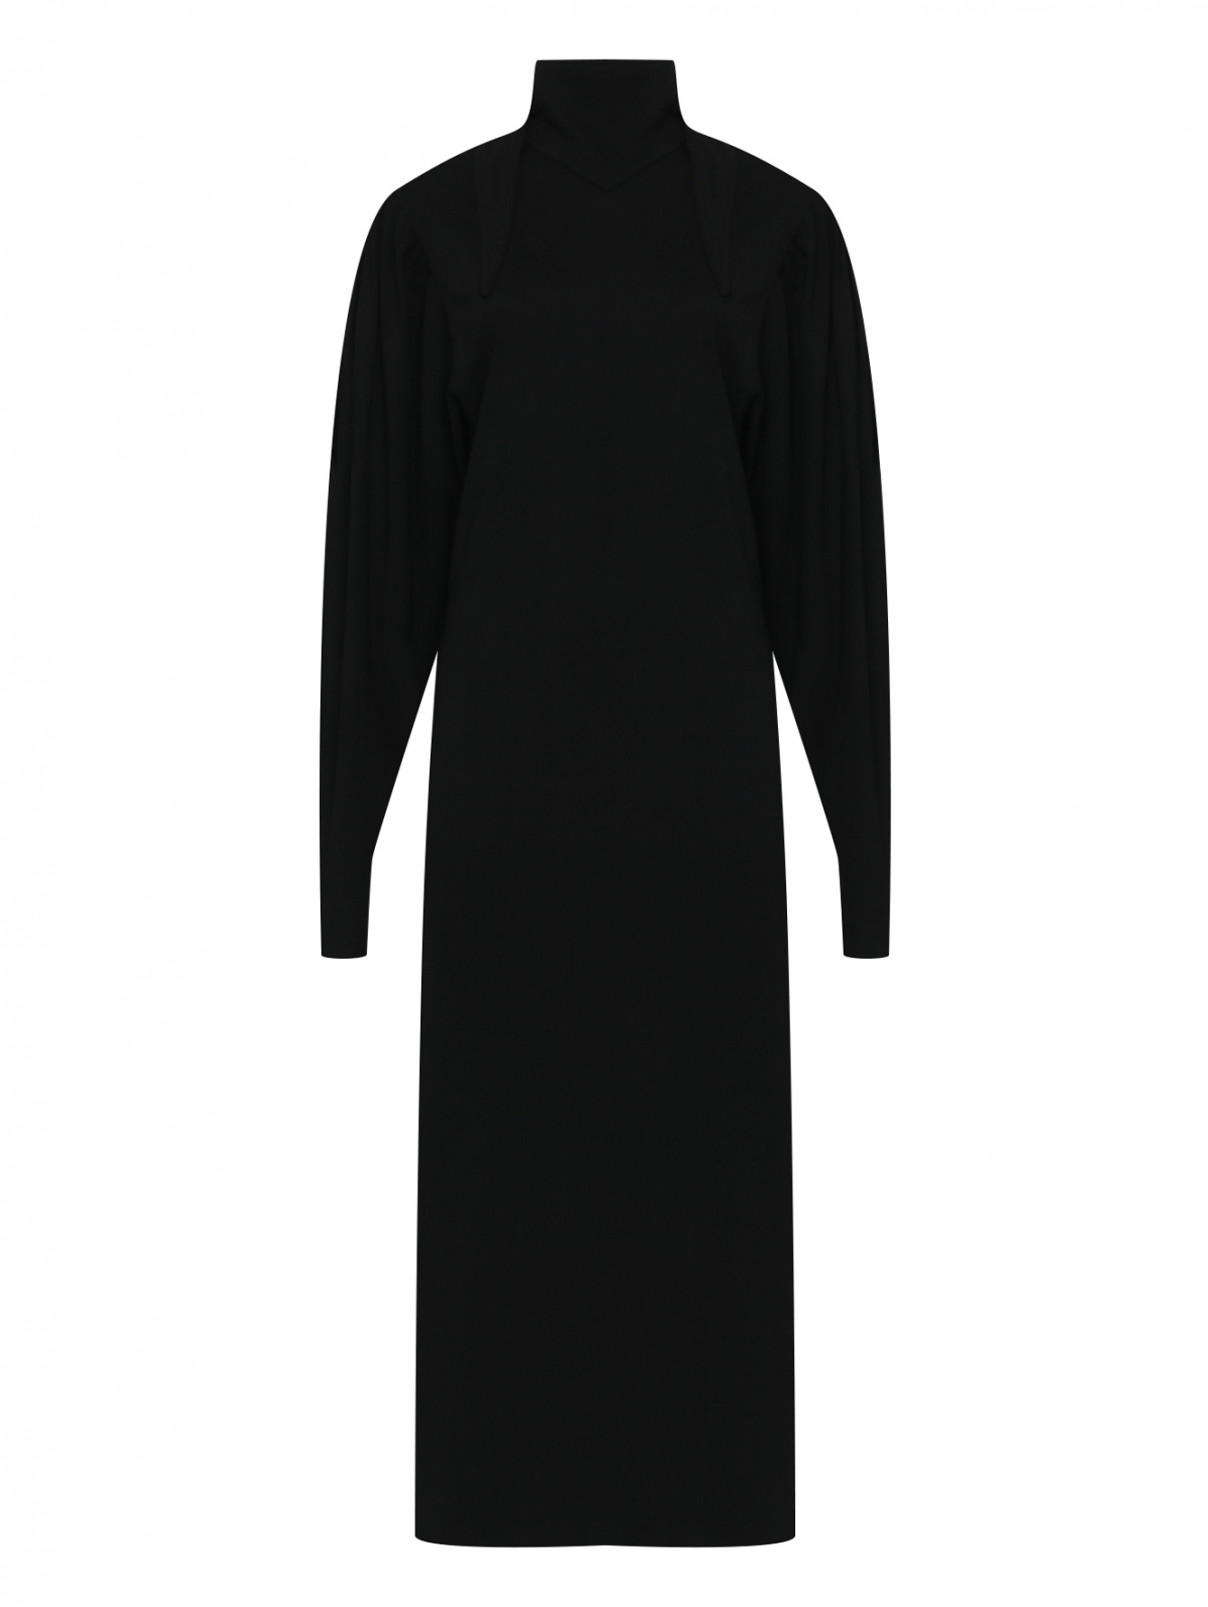 Однотонное платье макси из хлопка Lemaire  –  Общий вид  – Цвет:  Черный